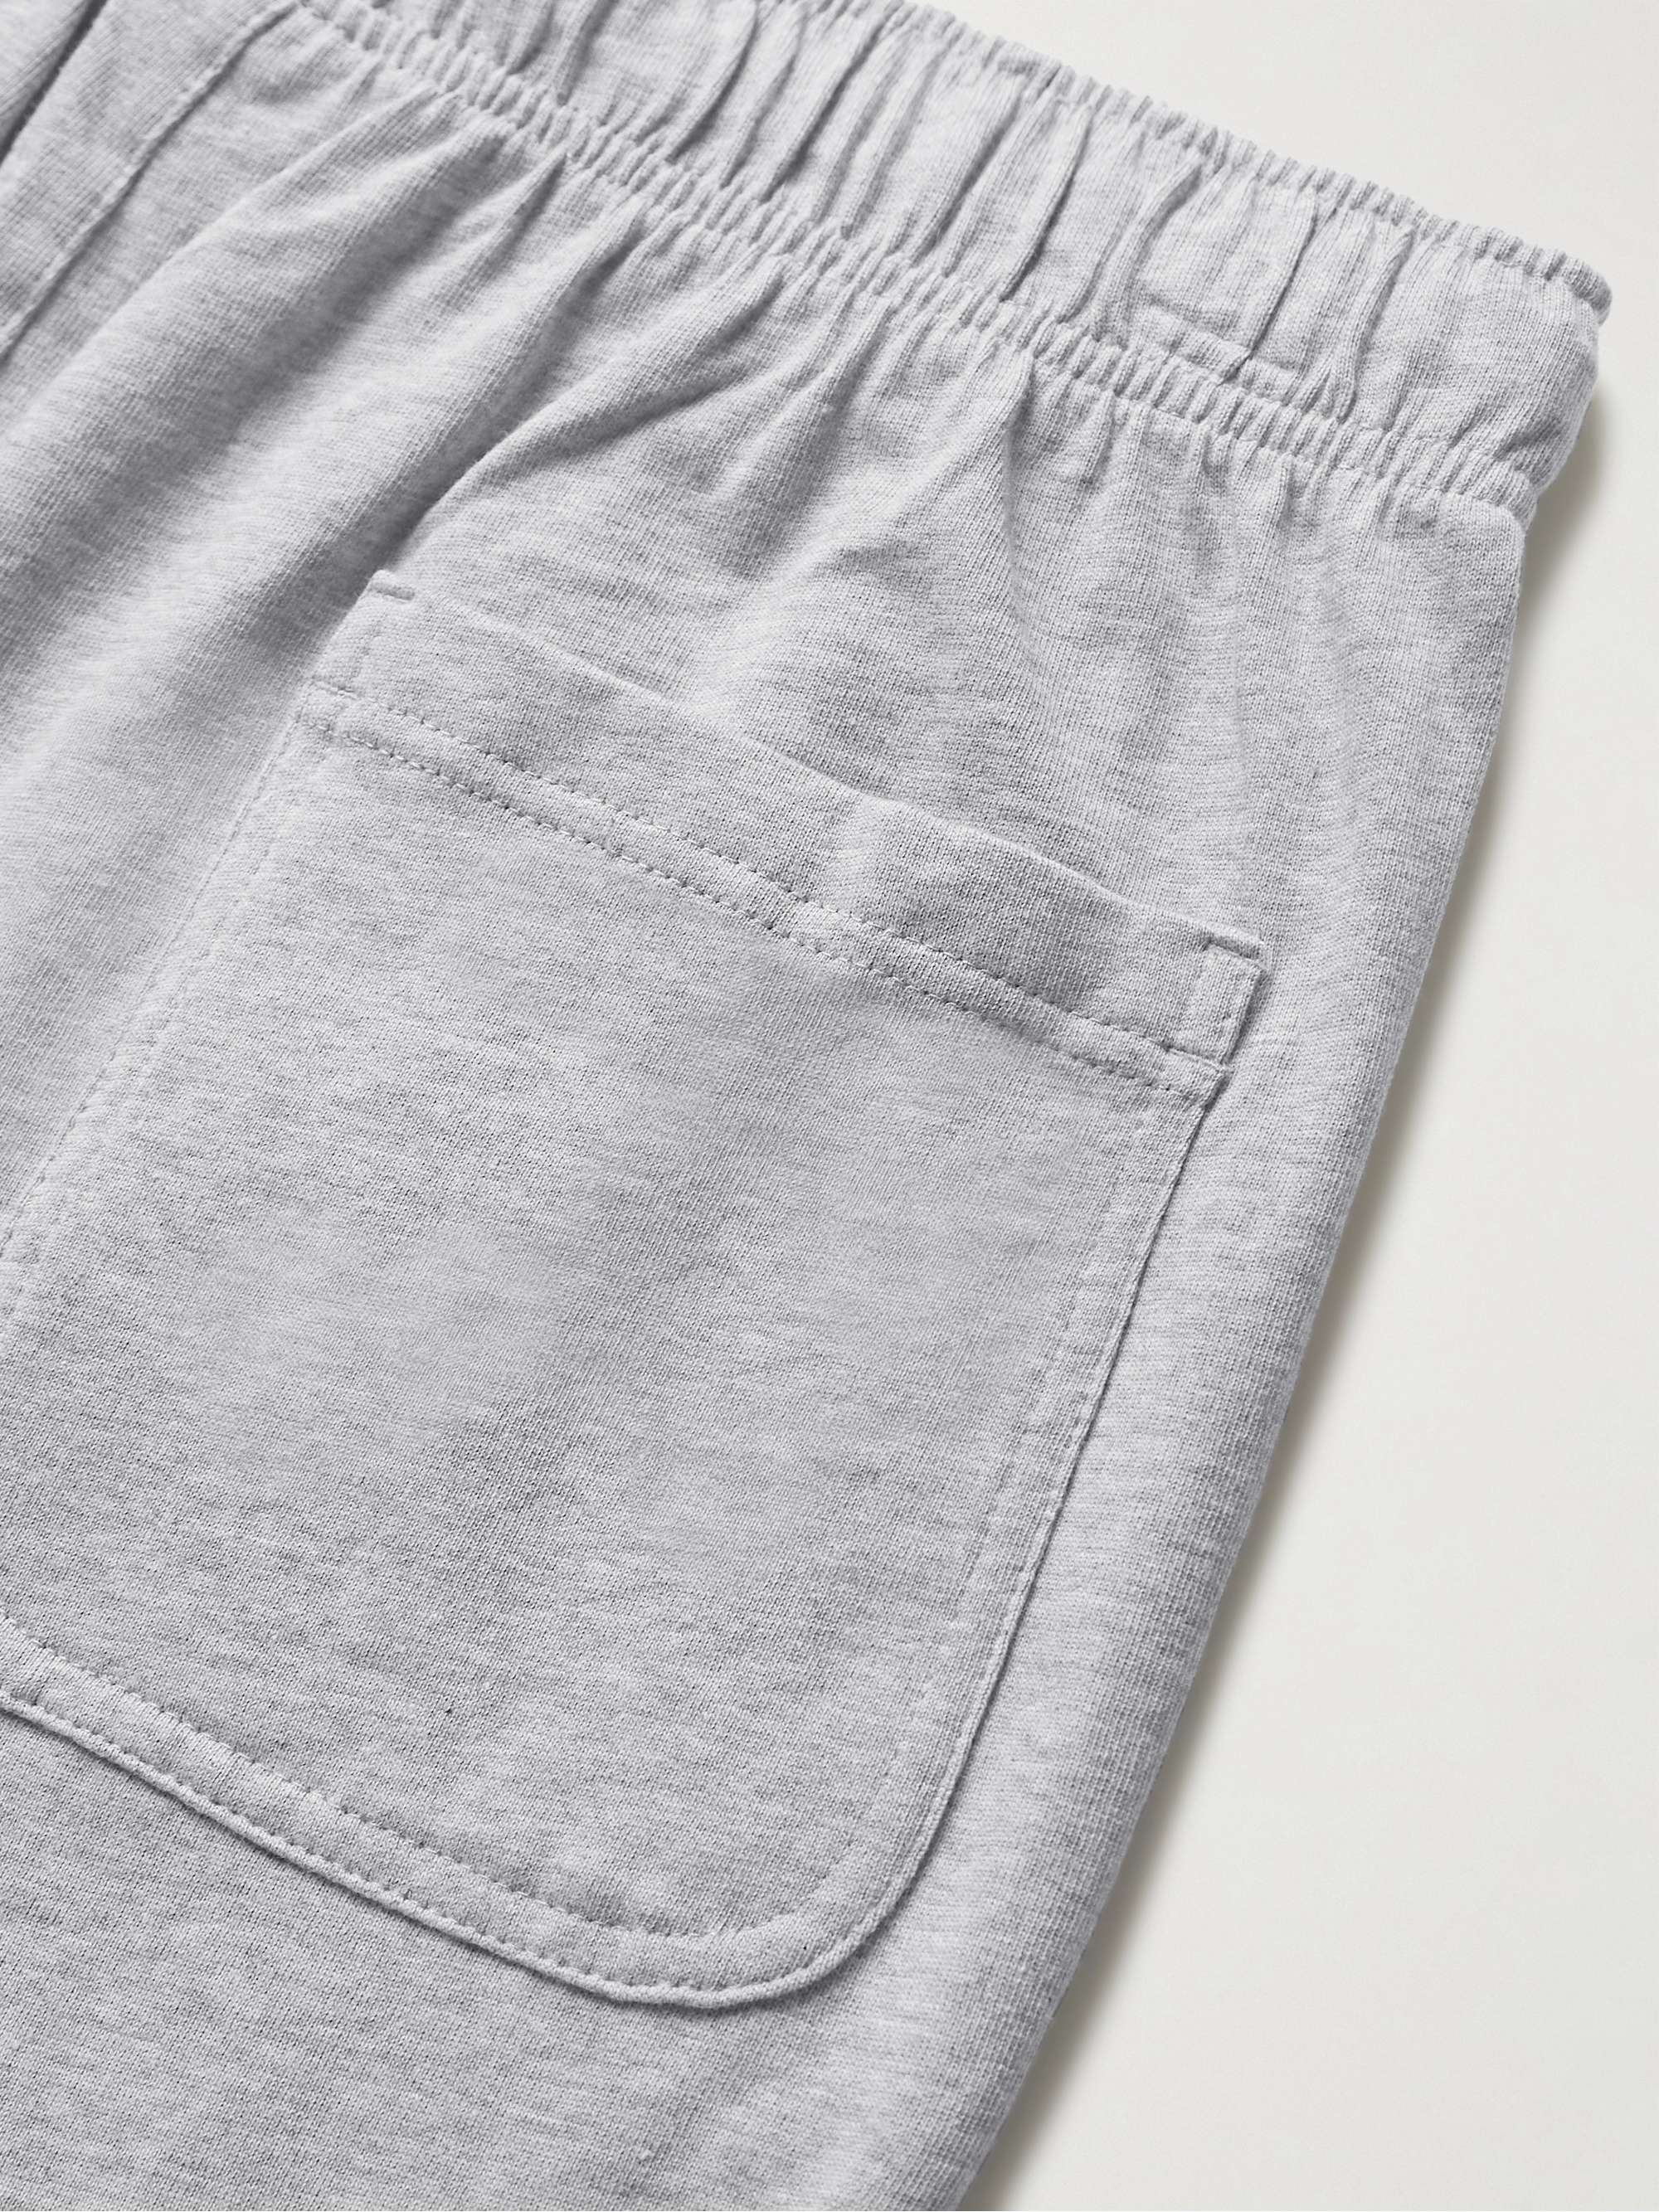 NIKE NSW Cotton-Jersey Drawstring Shorts